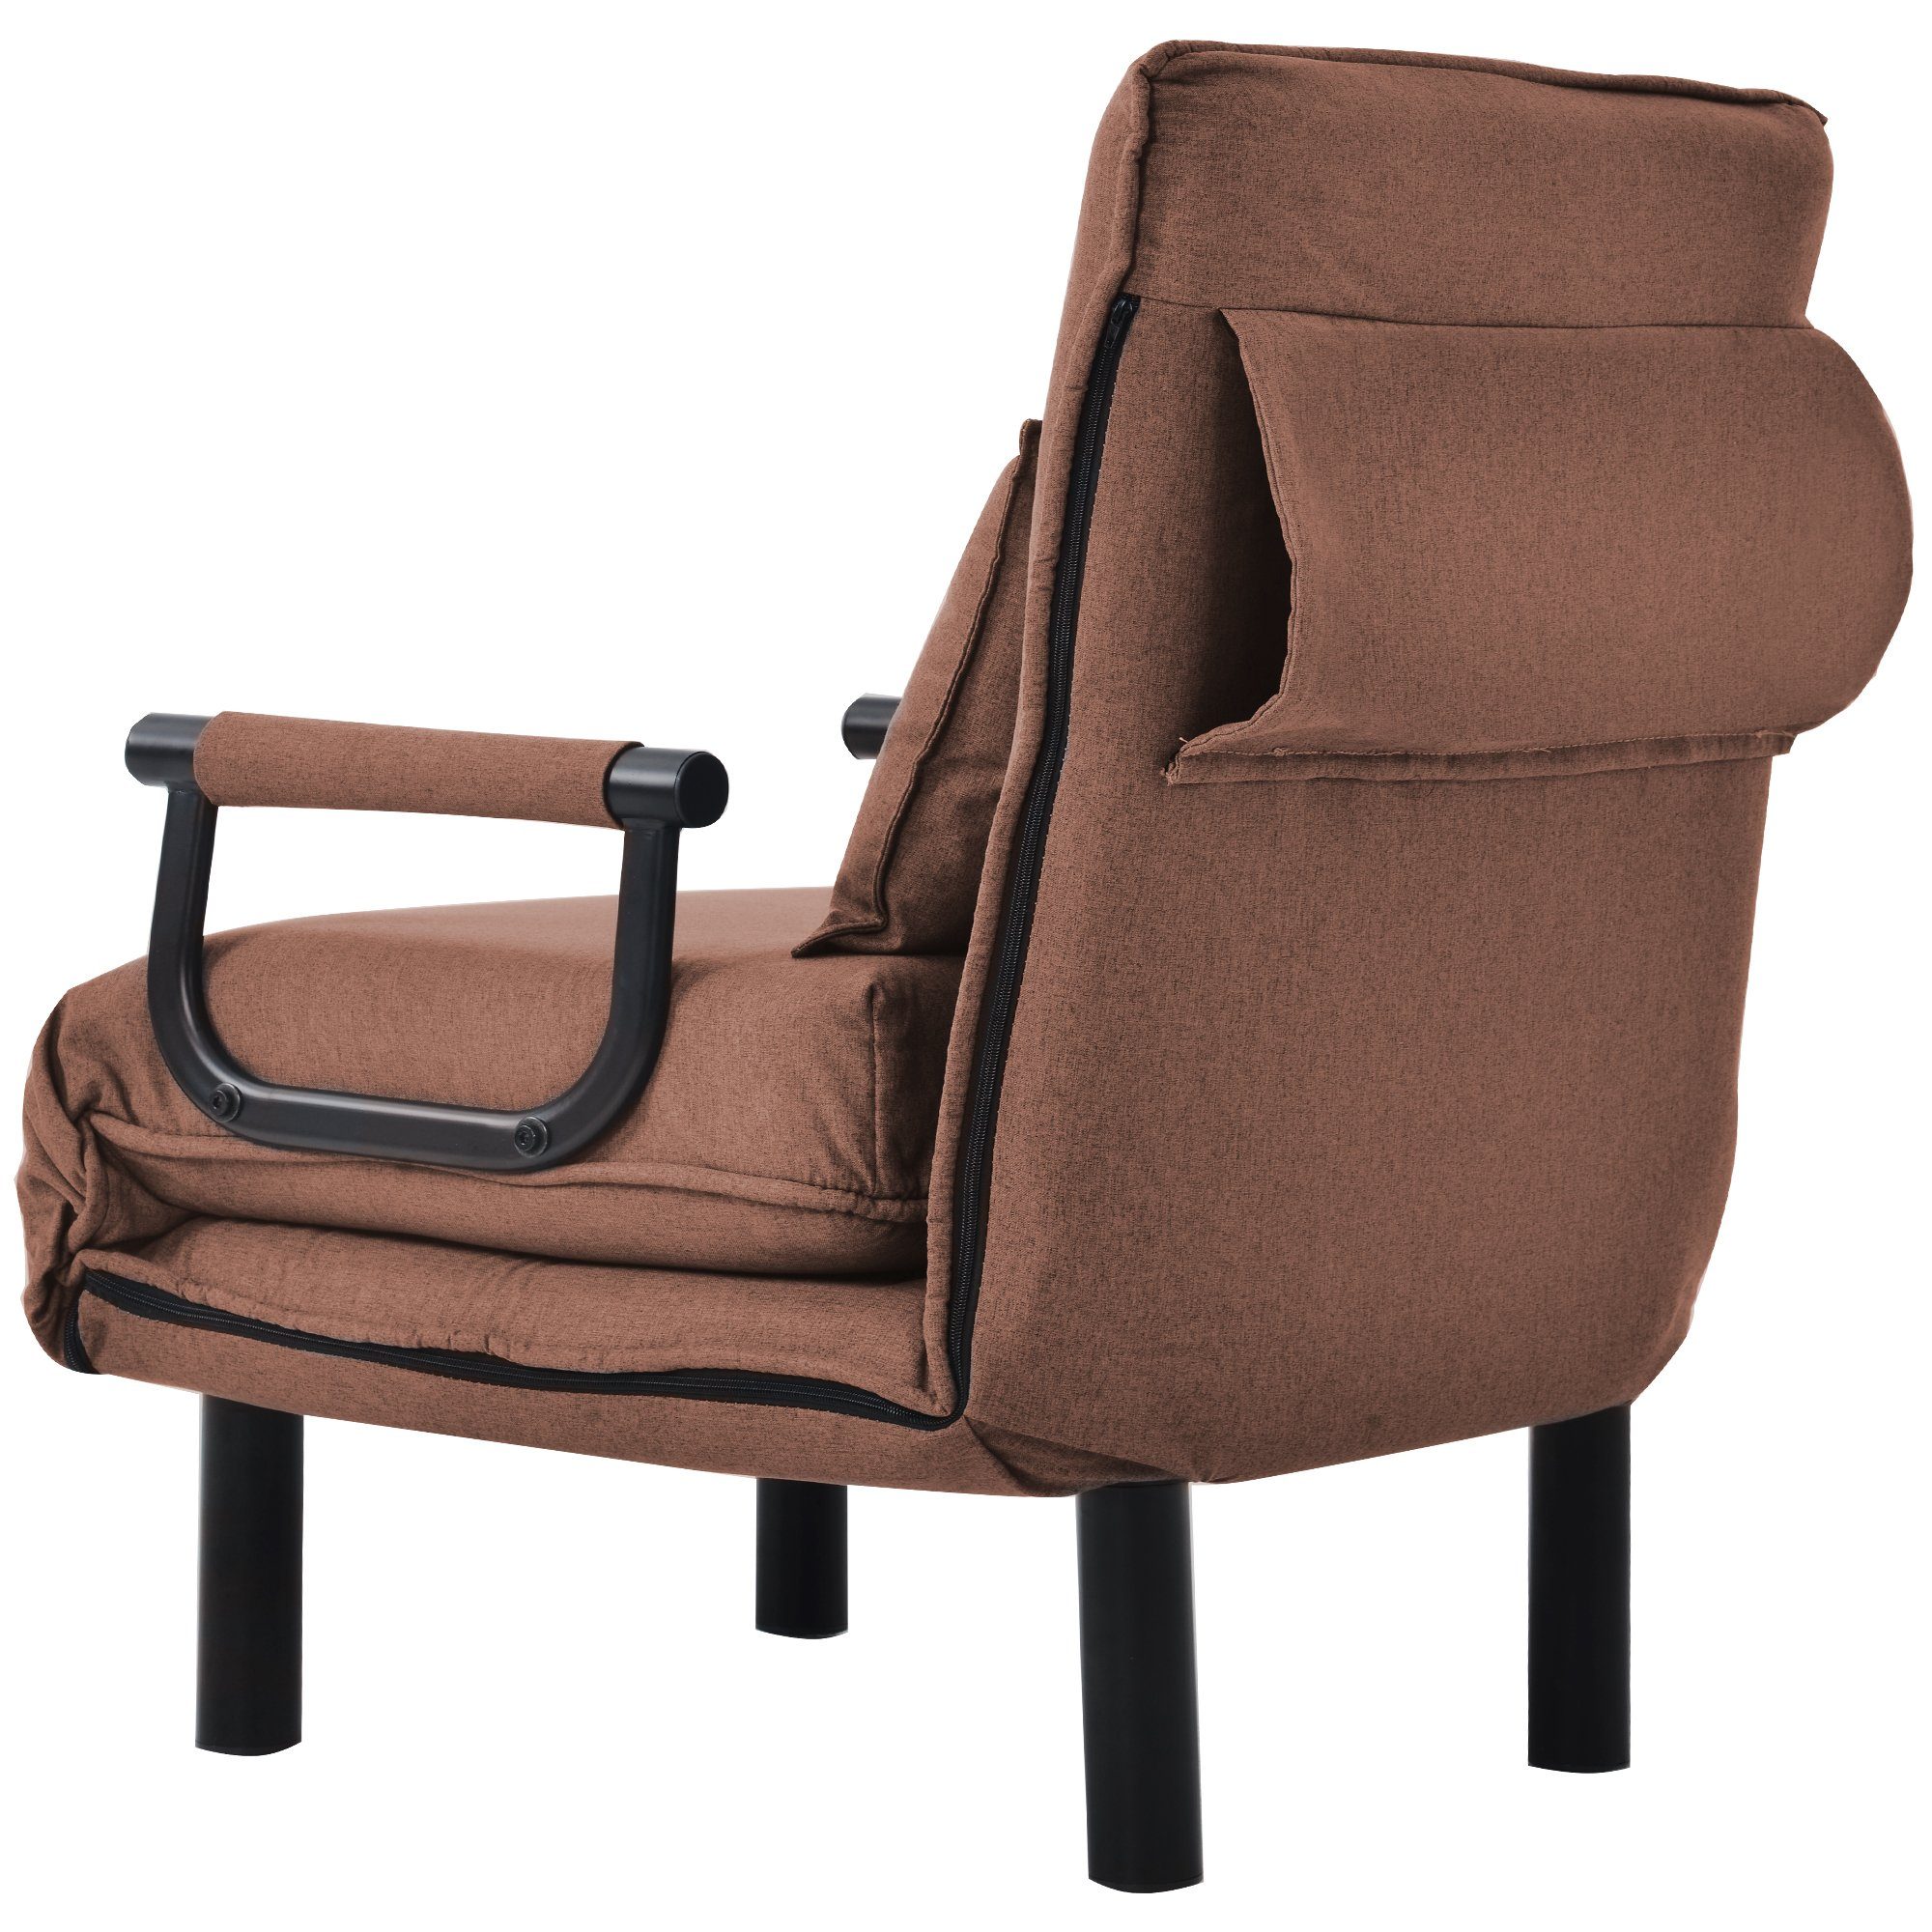 Schlafsofa Sessel mit 6 Bett Positionen verstellbare Stuhl Relaxsessel Schlafsessel Braun Rückenlehne WISHDOR Polsterstuhl Couch,